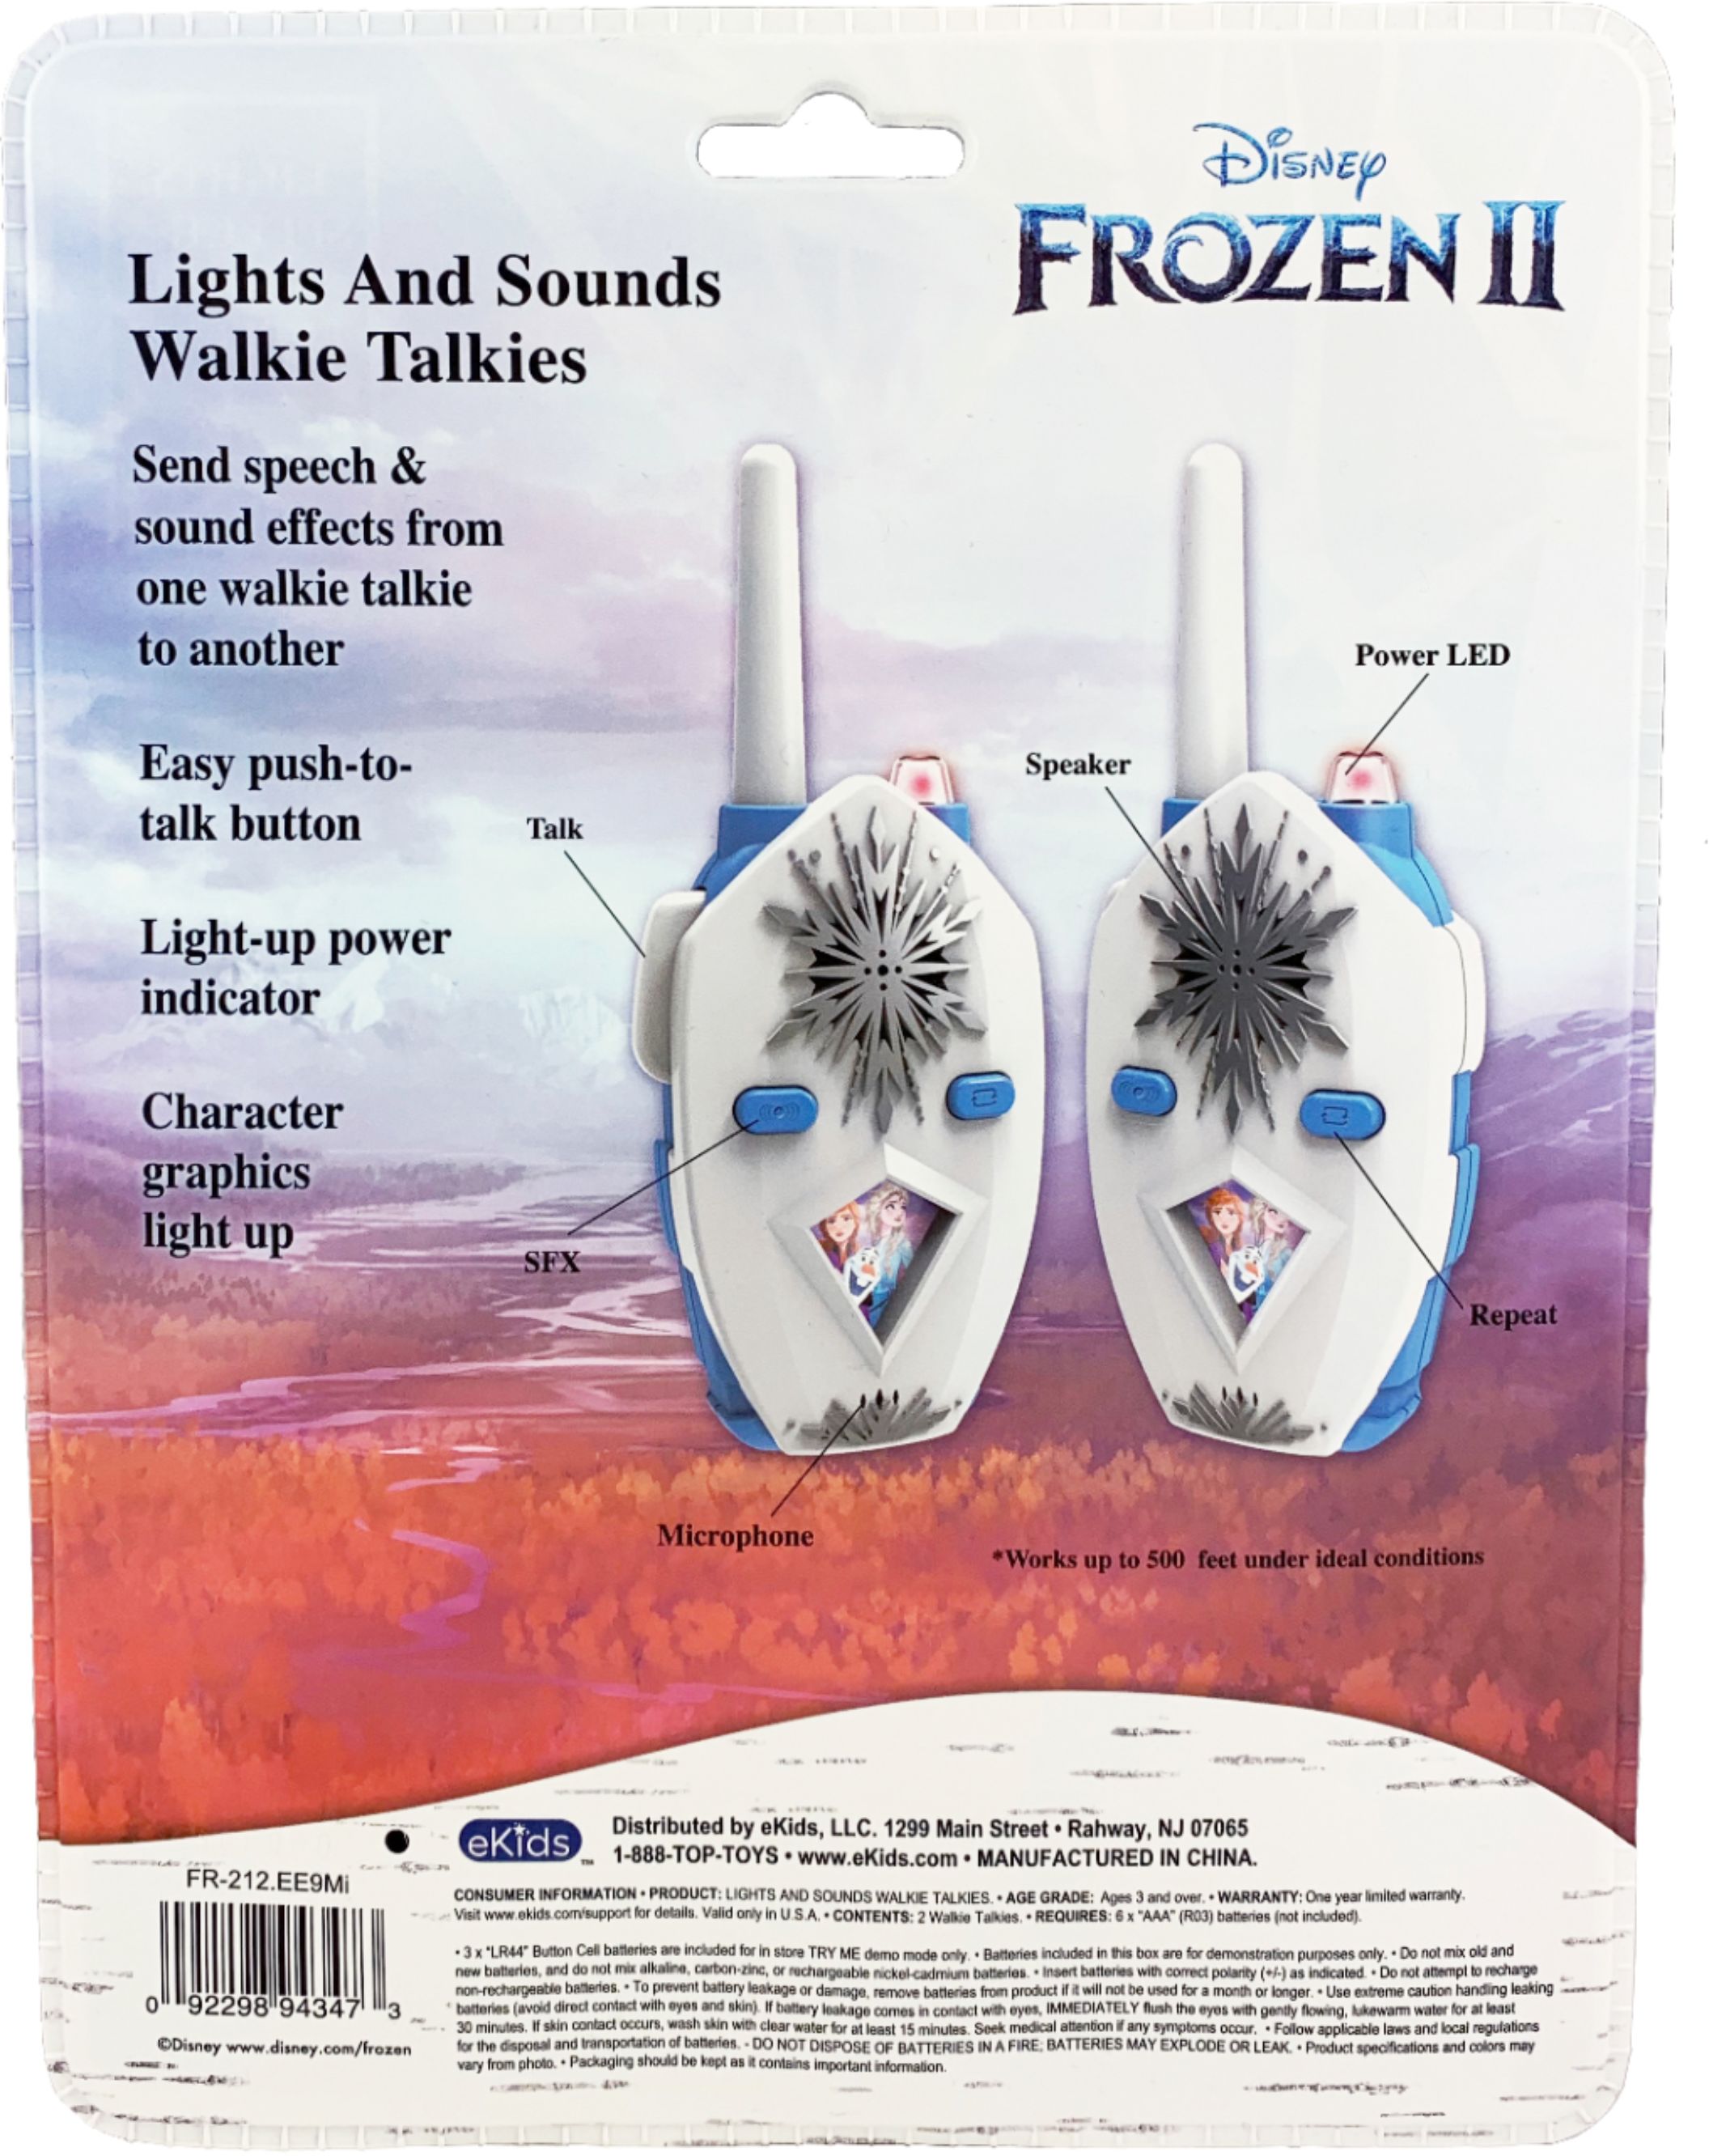 Middel Reusachtig Bij zonsopgang Best Buy: eKids Disney Frozen II Walkie Talkies White/Light Blue  FR-212.EEV9M